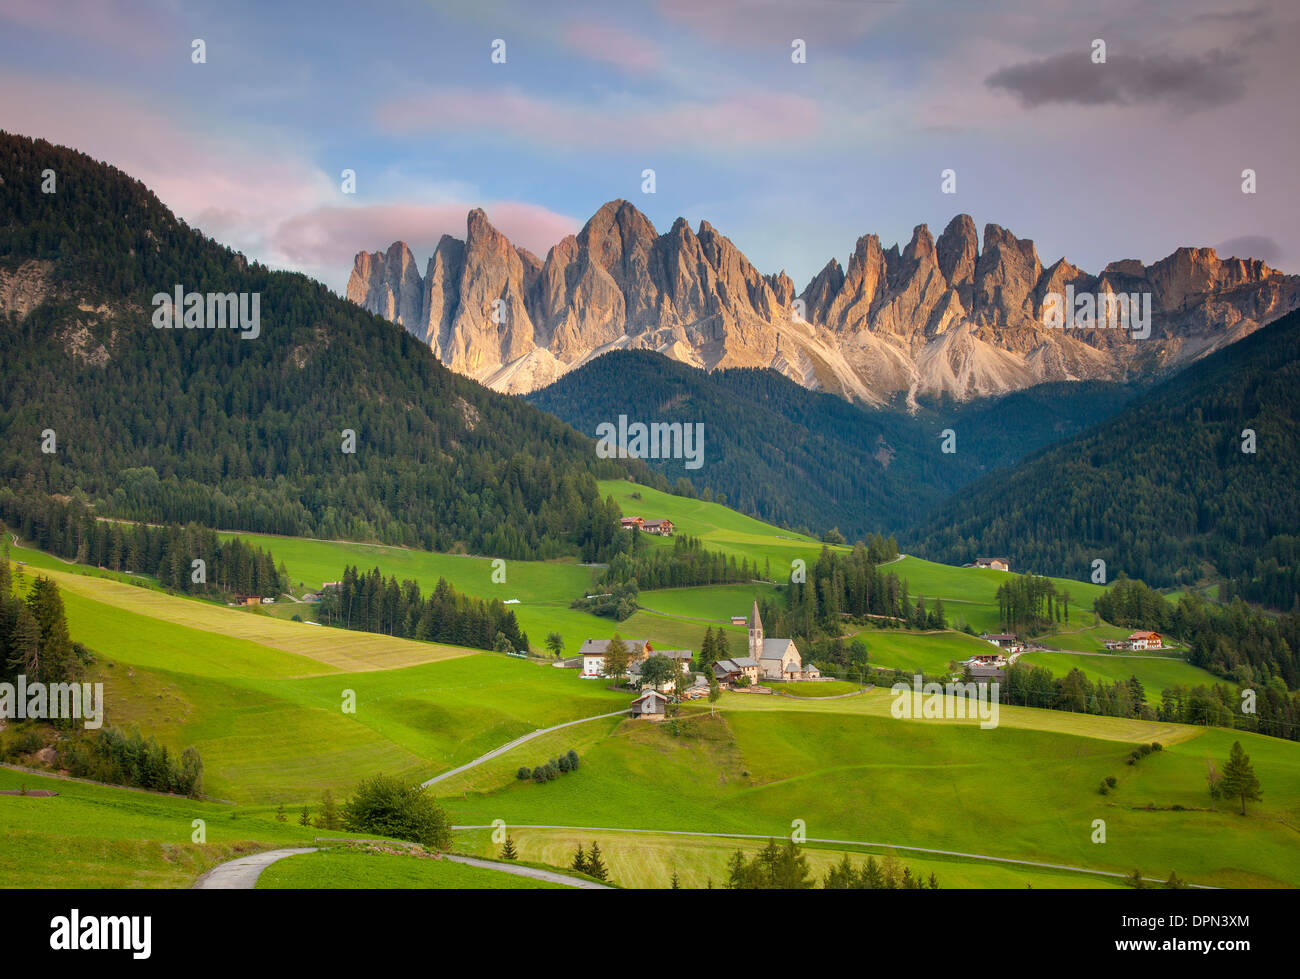 Santa Bittermandelaroma und die Dolomiten im Val di Funes, Trentino-Alto-Adige Italien Stockfoto